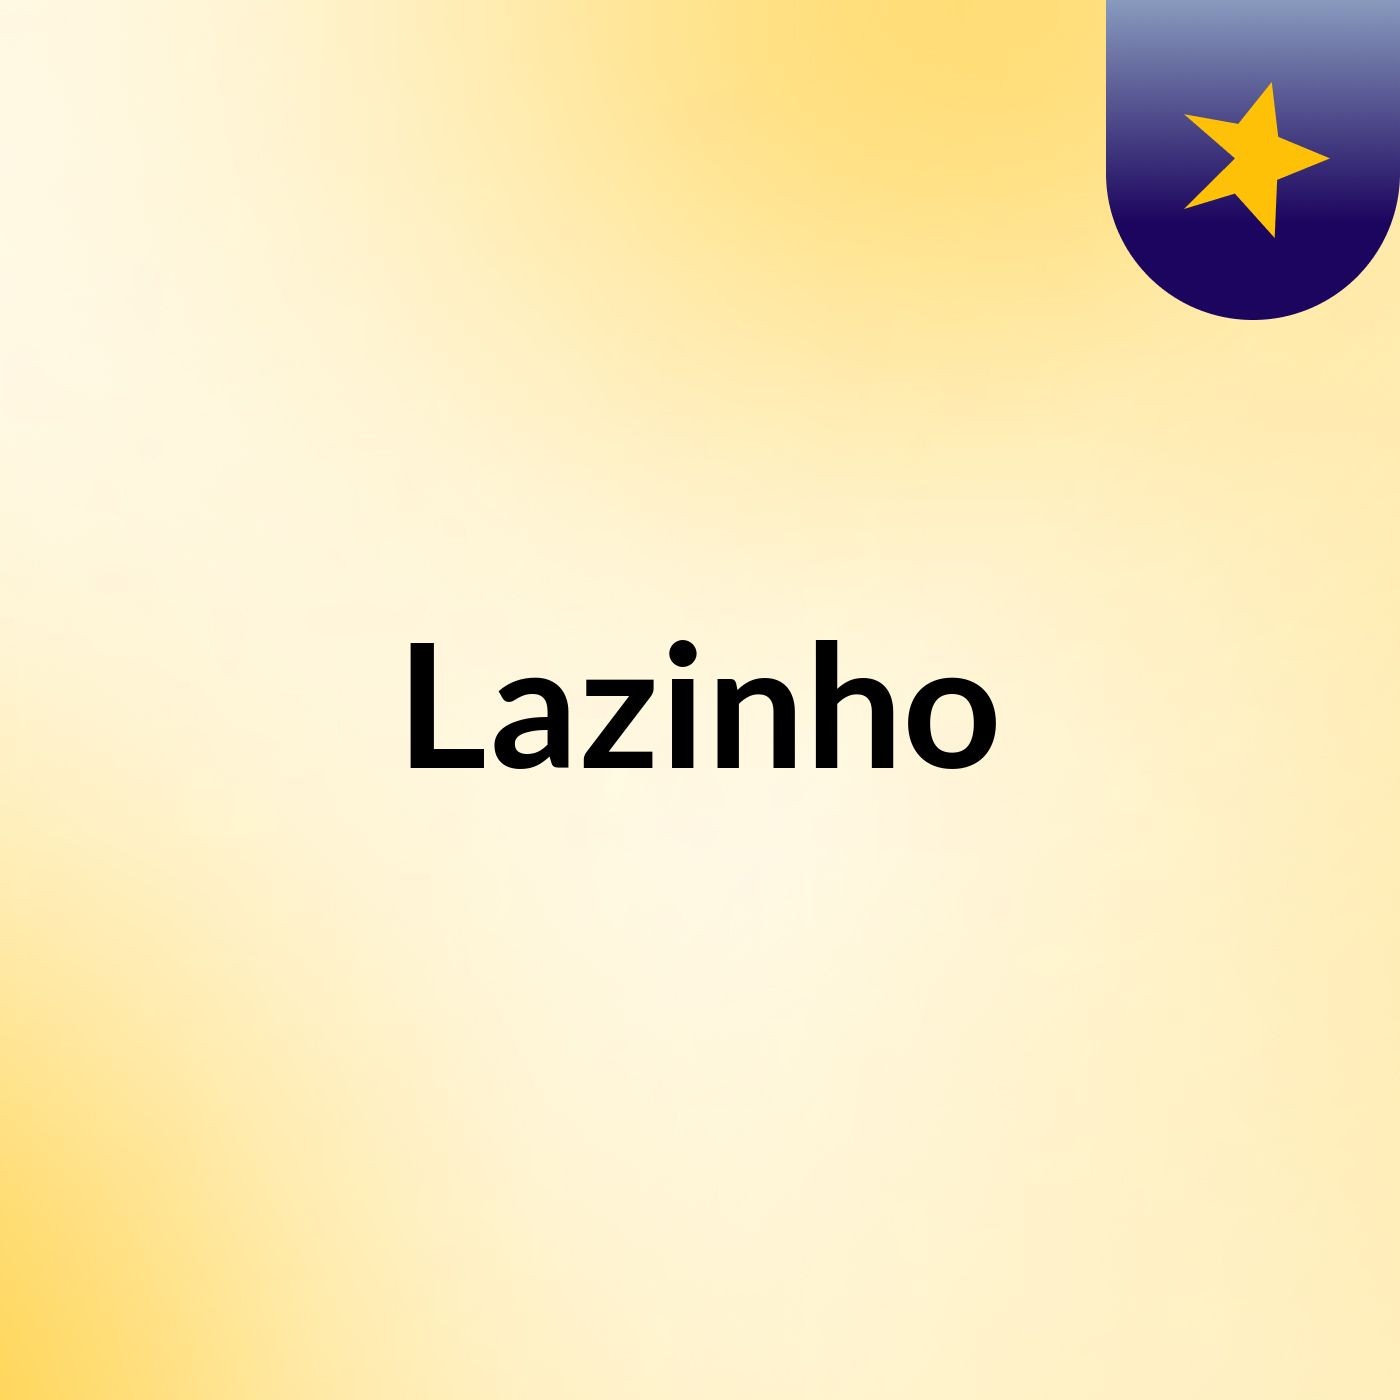 Lazinho